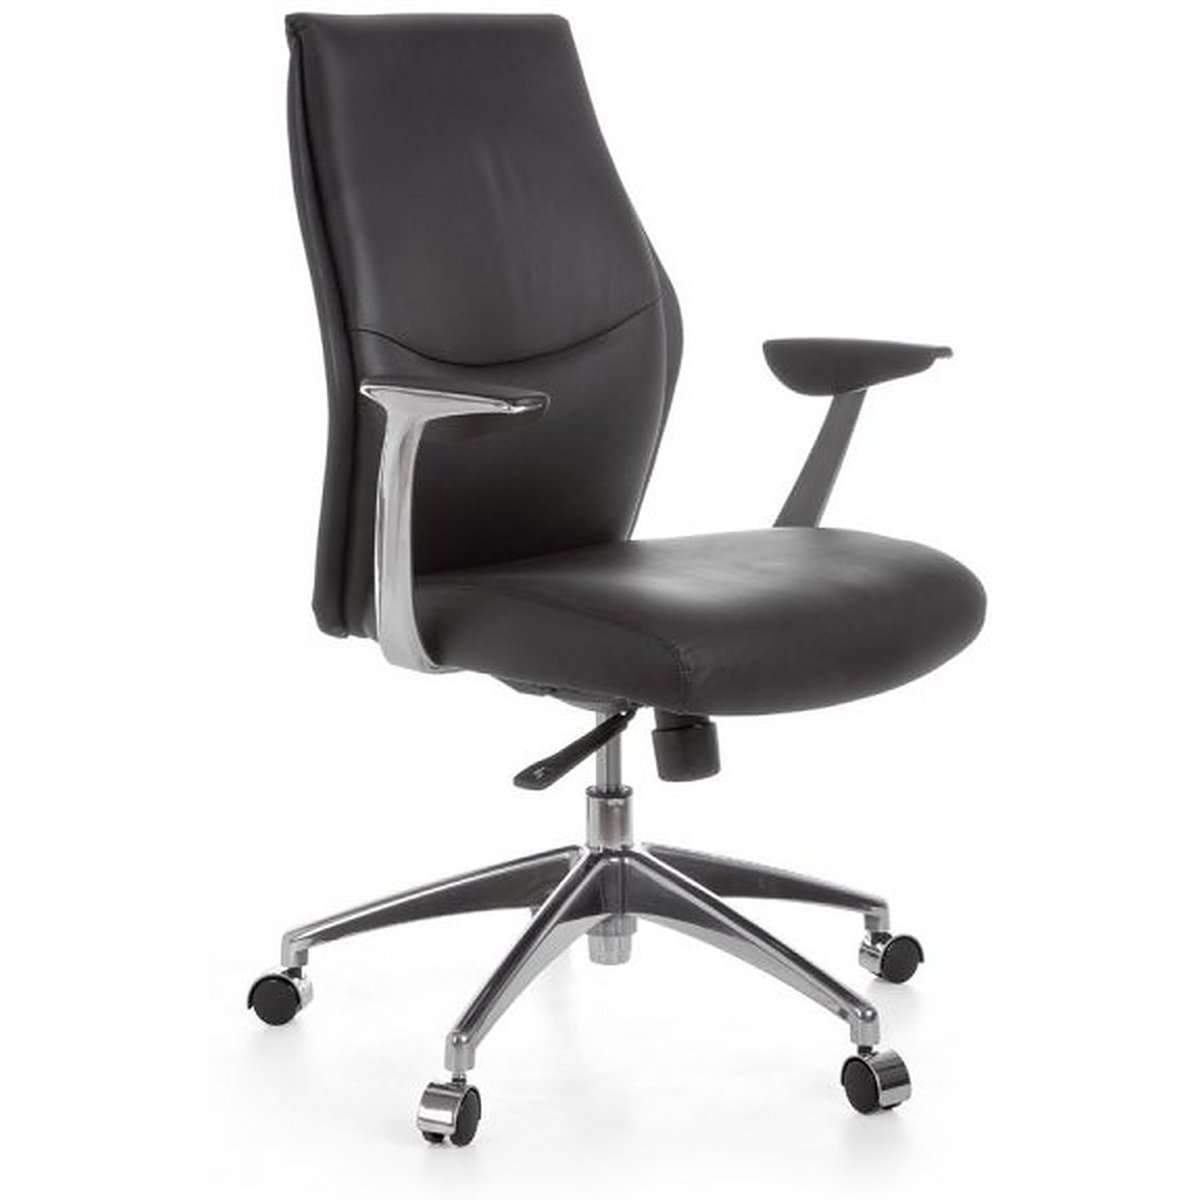 Chaise de bureau Nancy's Concourse - Chaise de bureau ergonomique - Chaise de direction en cuir noir - Chaises de bureau pour adultes